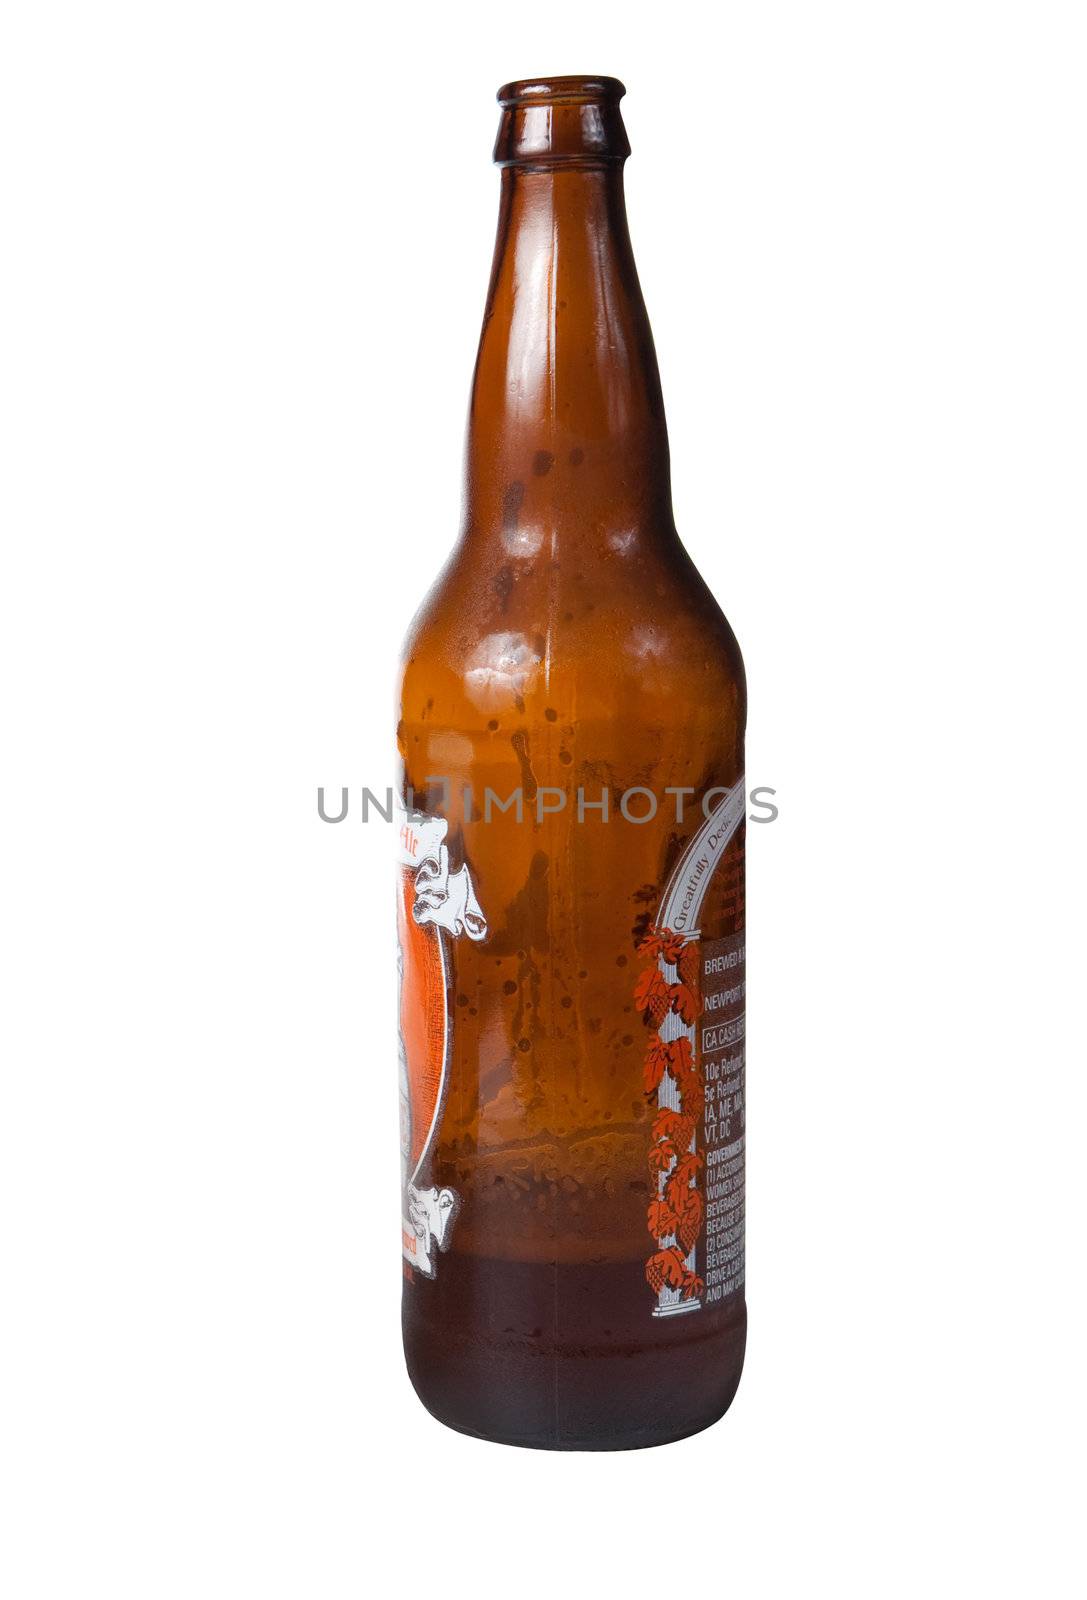 Brown bottle of beer by steheap